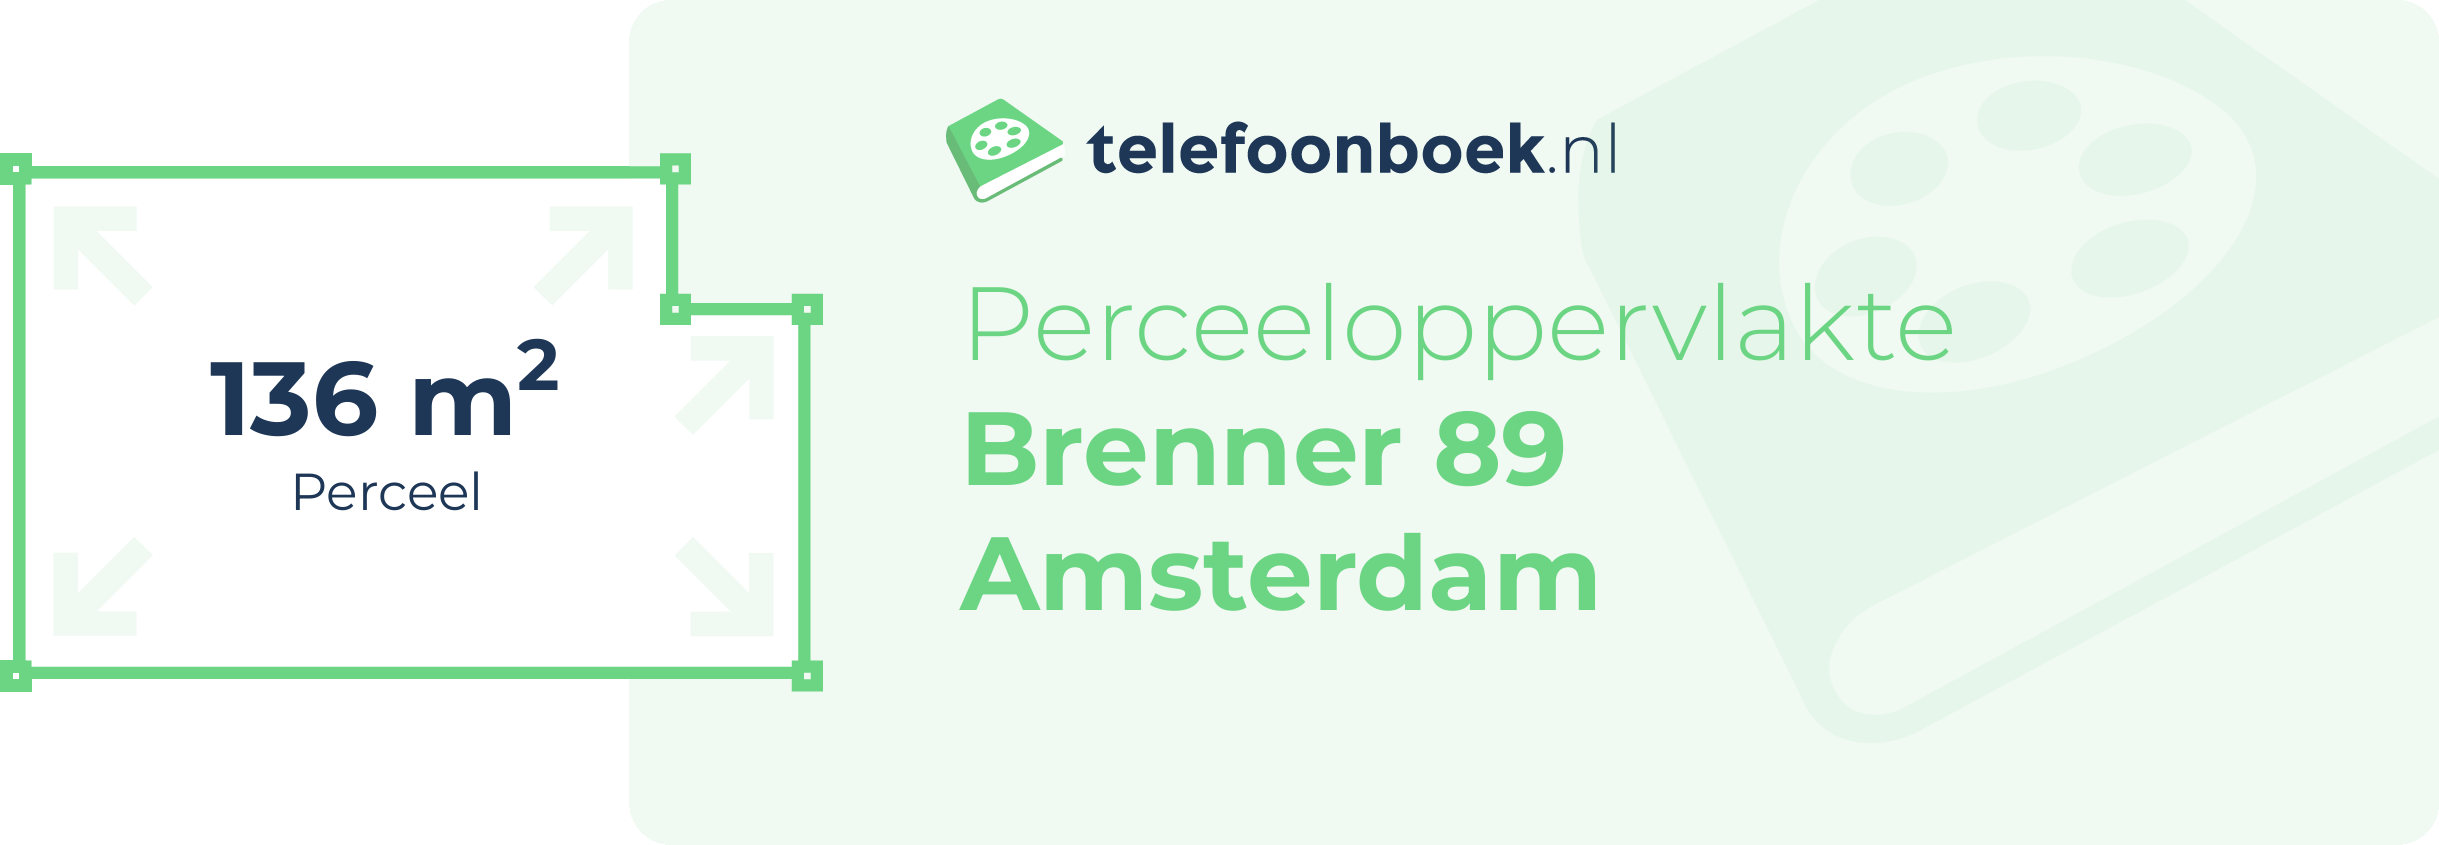 Perceeloppervlakte Brenner 89 Amsterdam